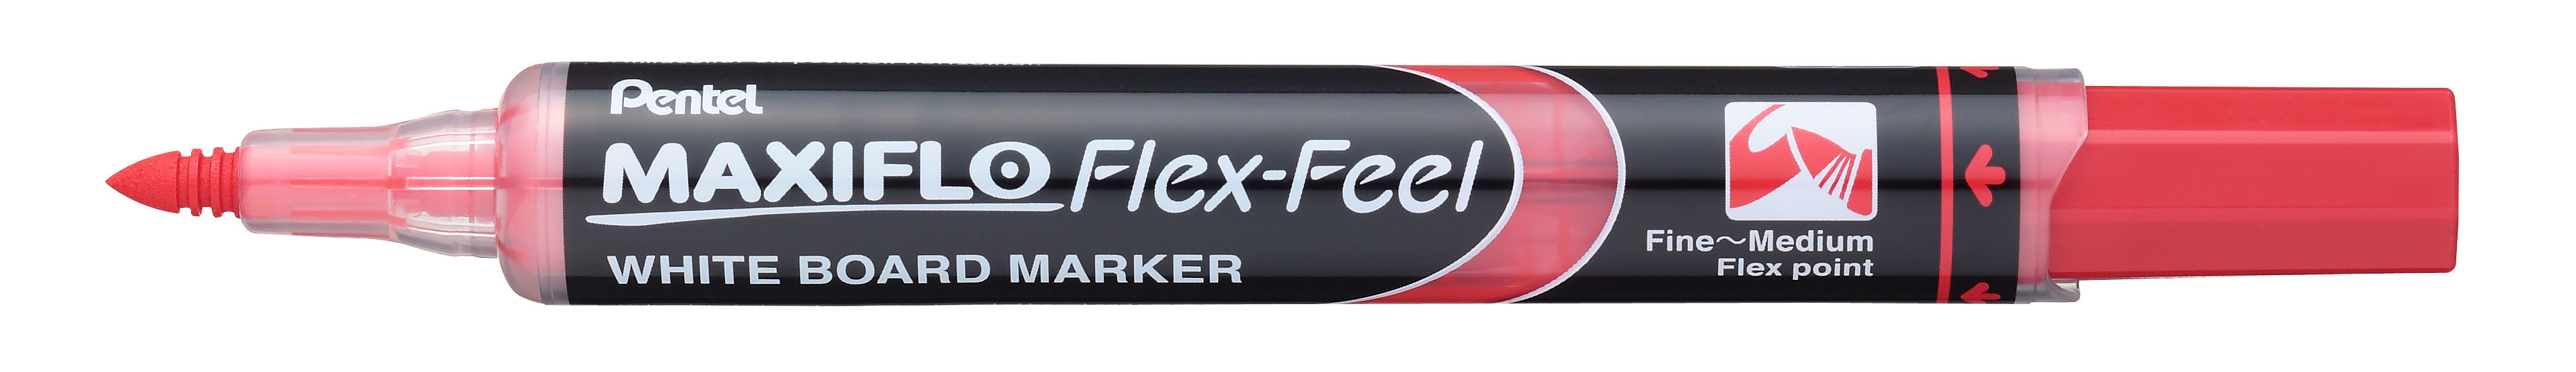 Whiteboardmarker Maxiflo Flex-Feel